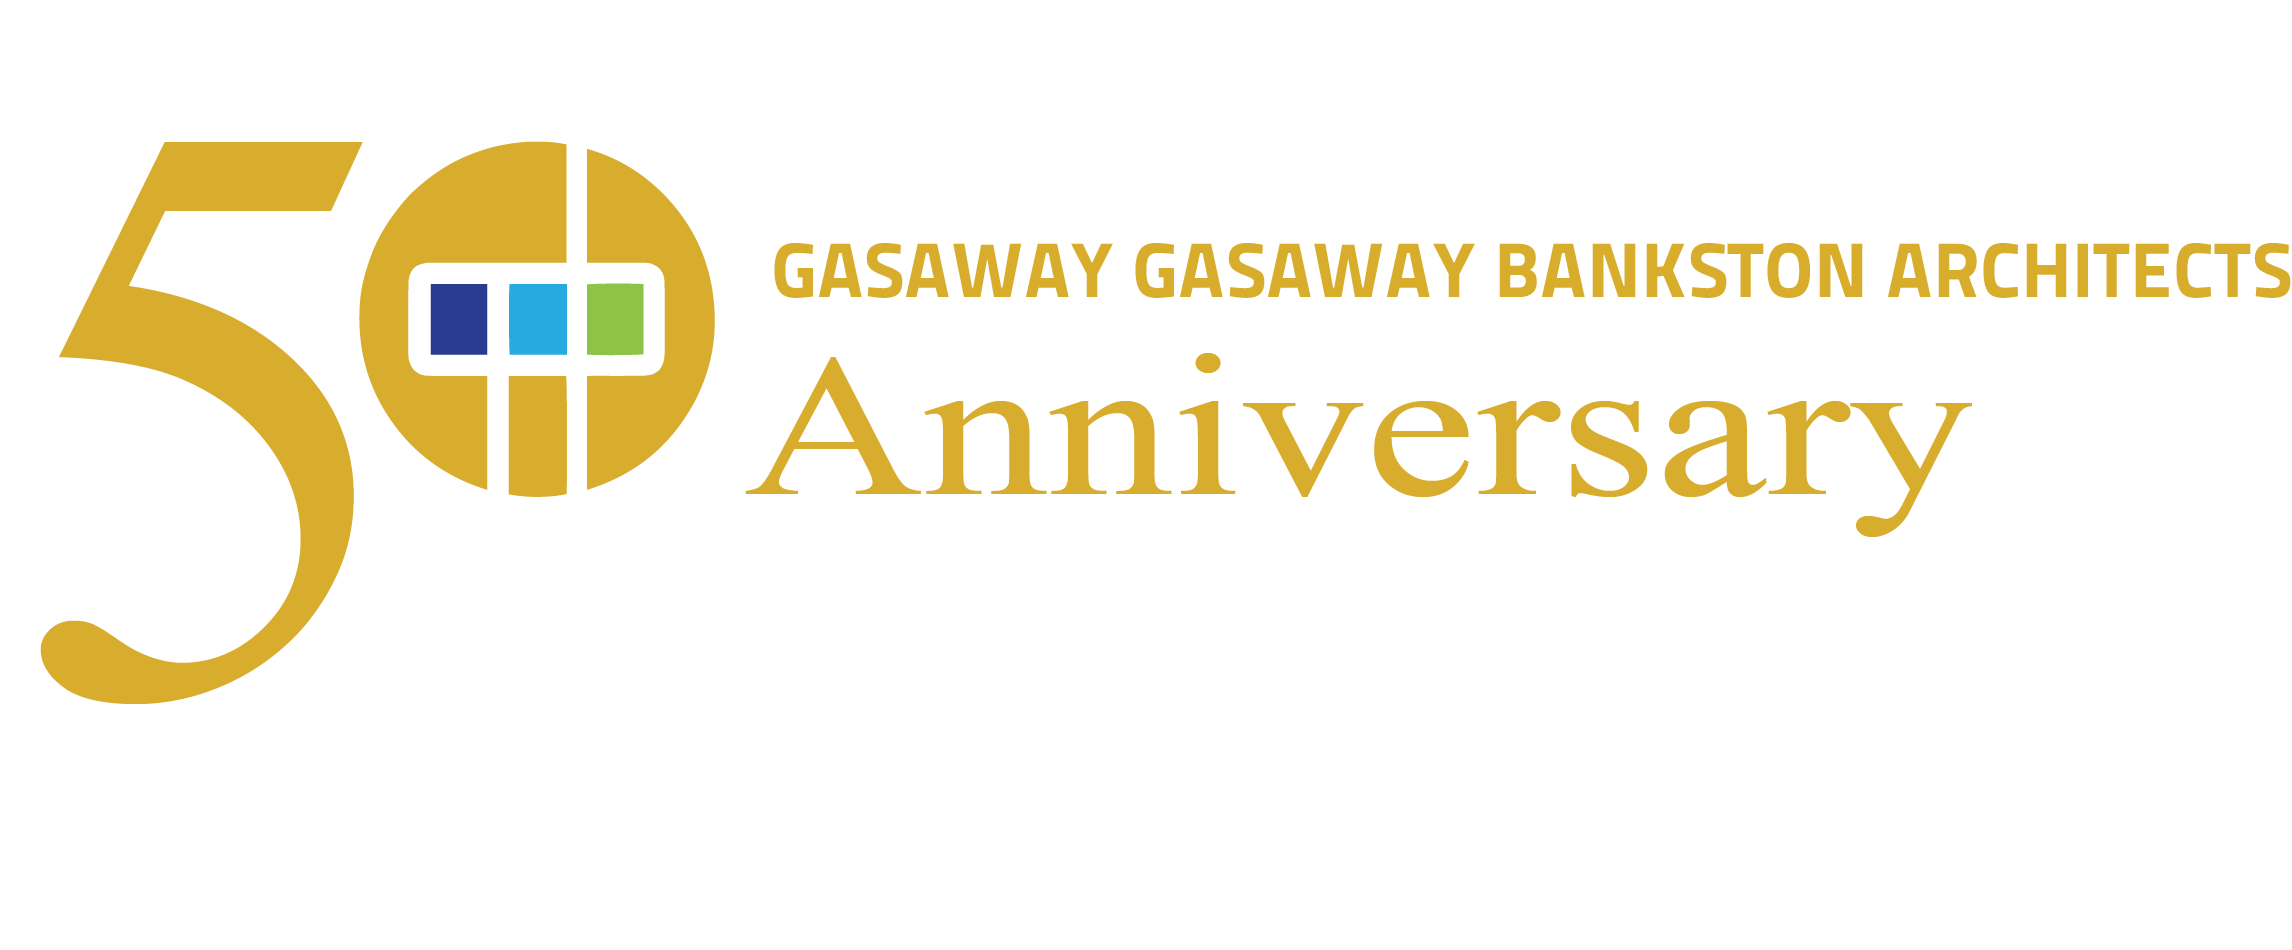 Gasaway Gasaway Bankston Architects